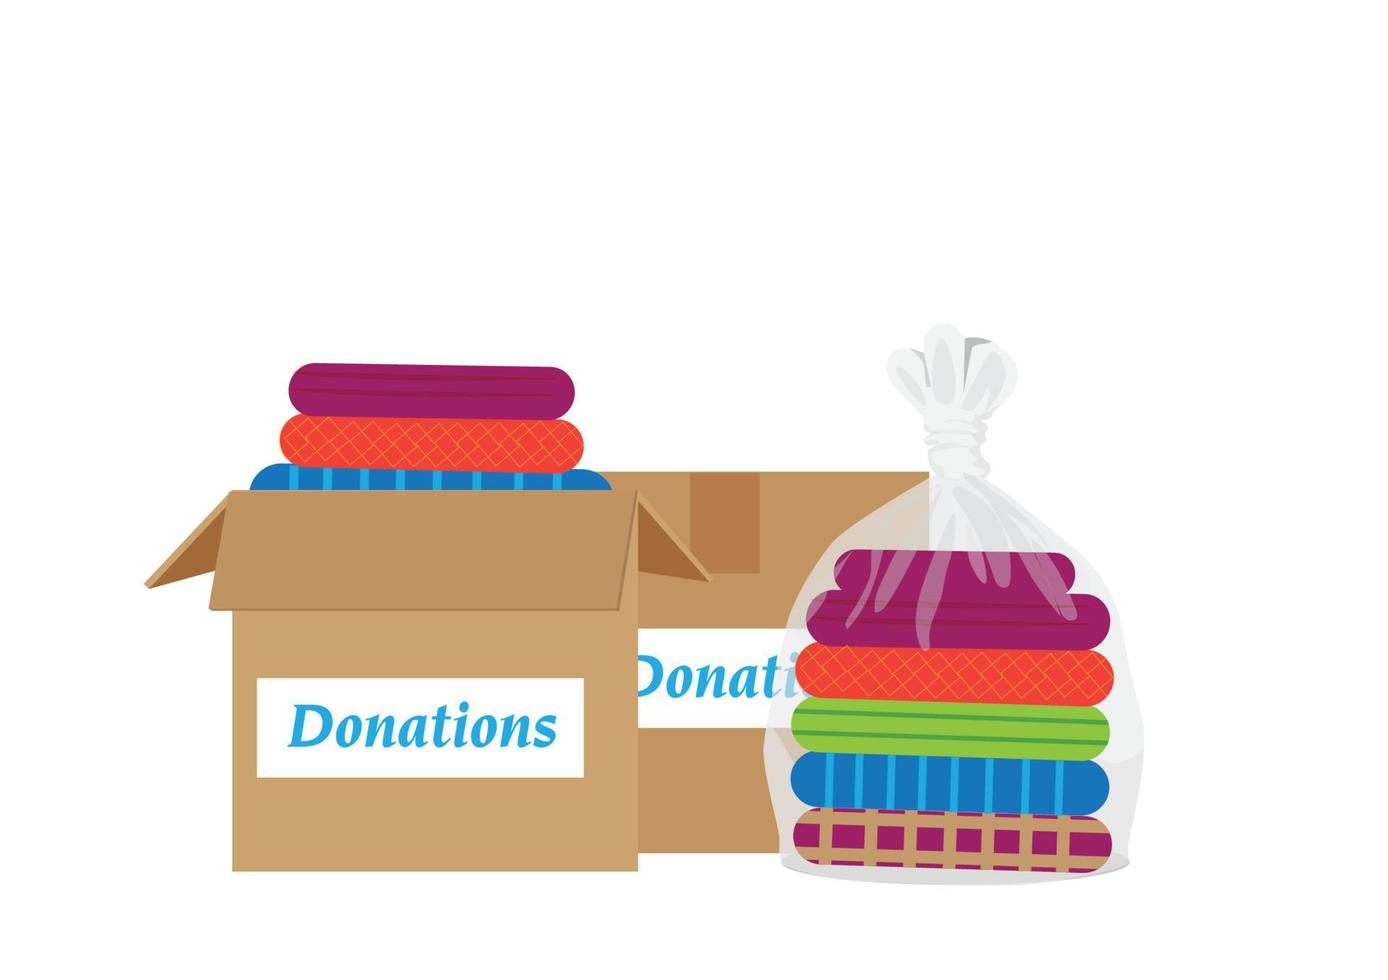 gebrauchte Kleidung in Säcken und Kisten, separate Spendenbox auf weiß, gebrauchte Hemden zur Spende. Cartoon-Illustrationsvektor im flachen Stil vektor